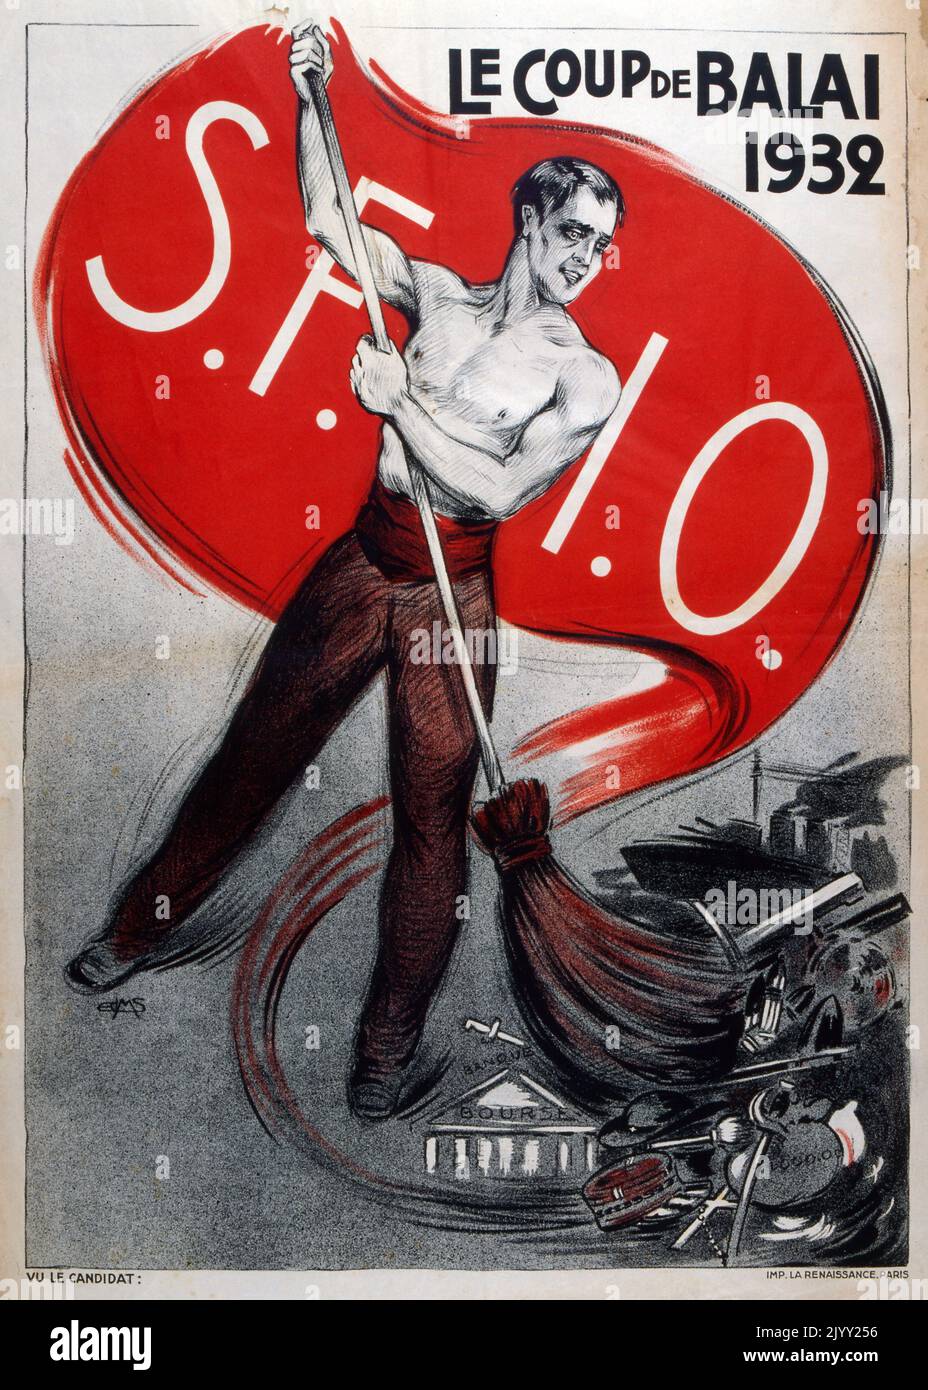 Le coup de balai (le balai) sur une affiche de propagande du Parti socialiste français (SFIO) pour les élections de l'Assemblée nationale en 1932 Banque D'Images